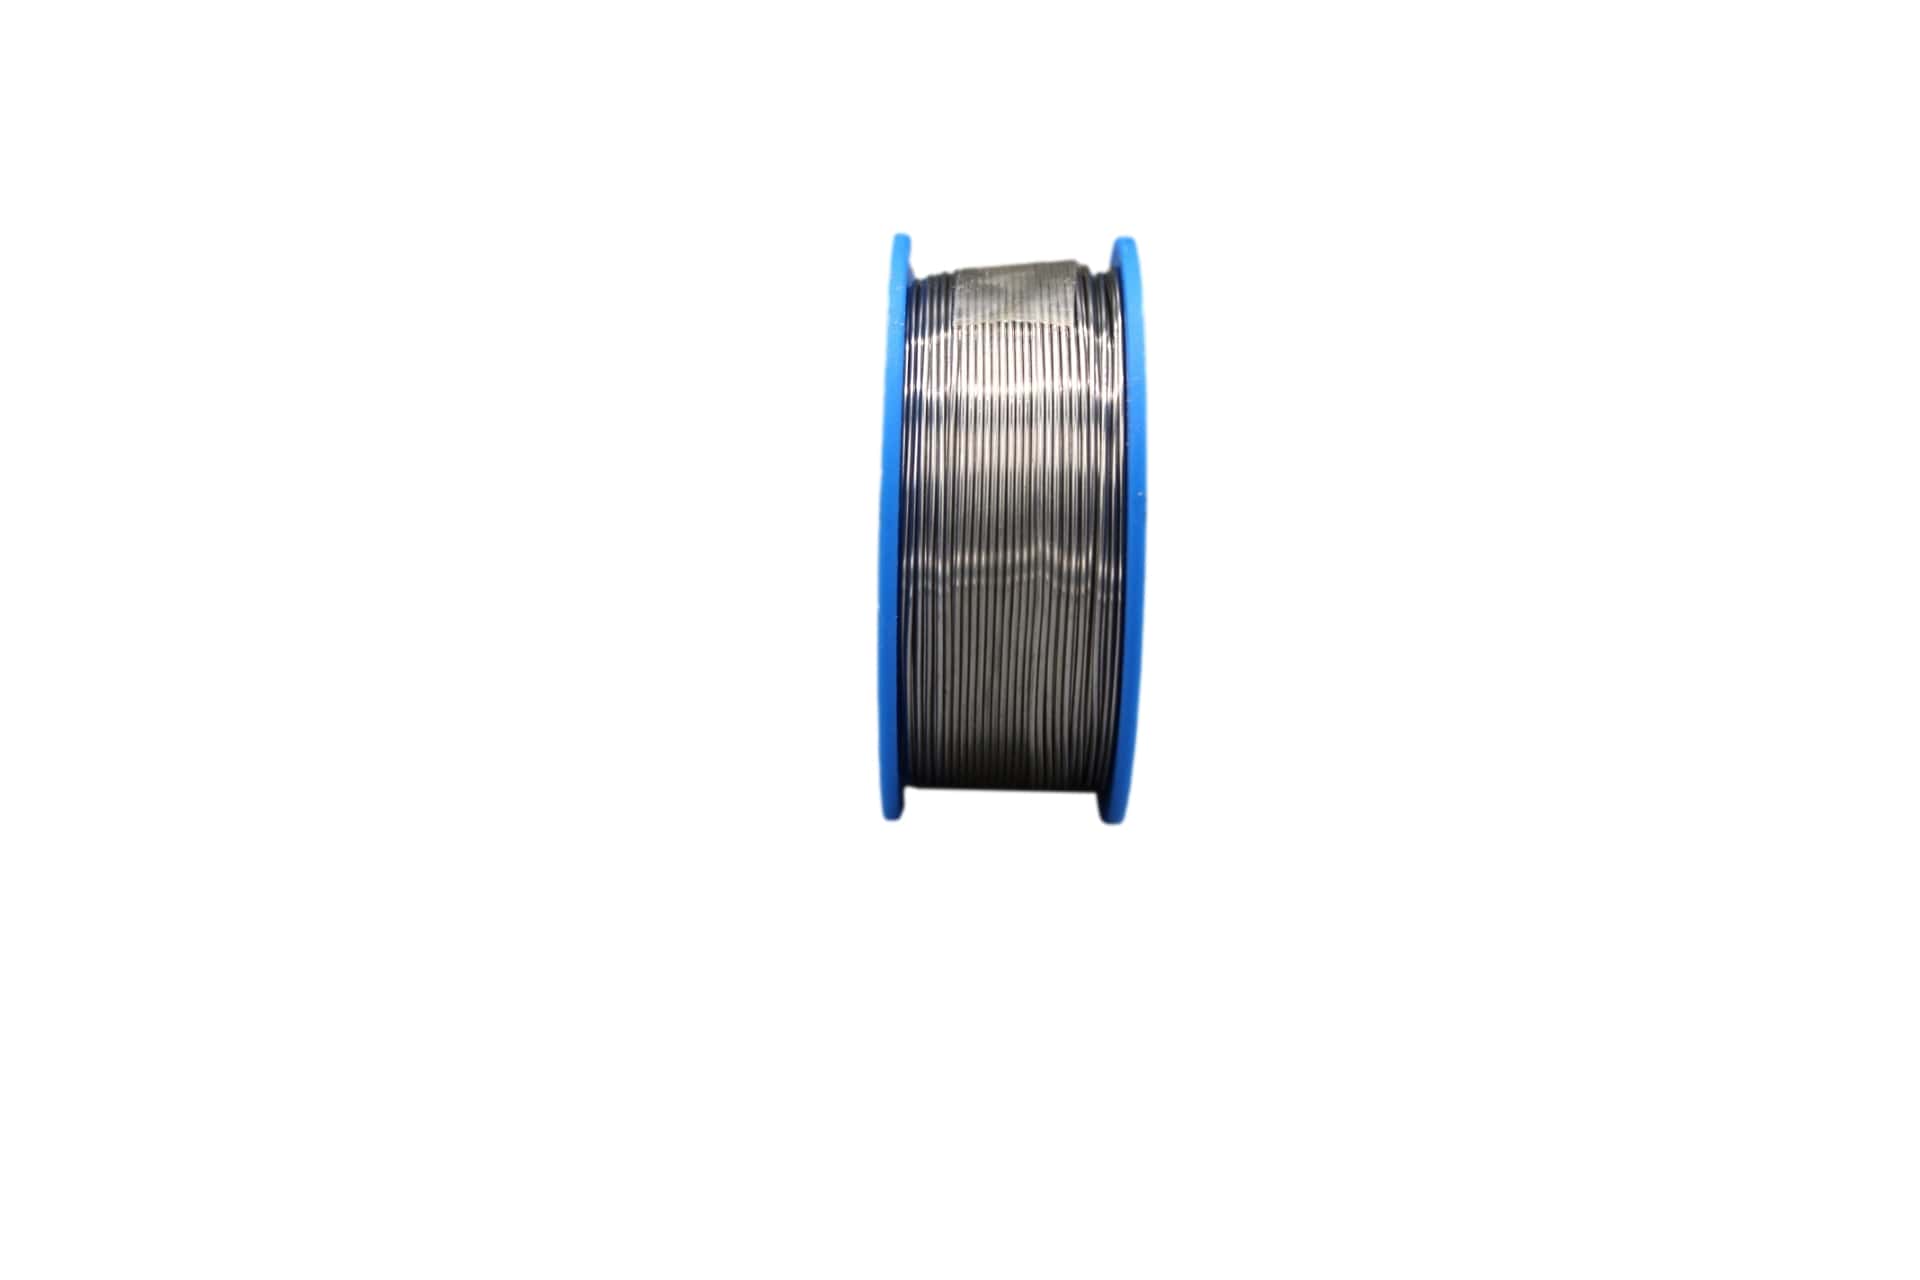 18640720 Felder solder wire, leaded, Sn60Pb39Cu1, 0.75mm, 250g, roll